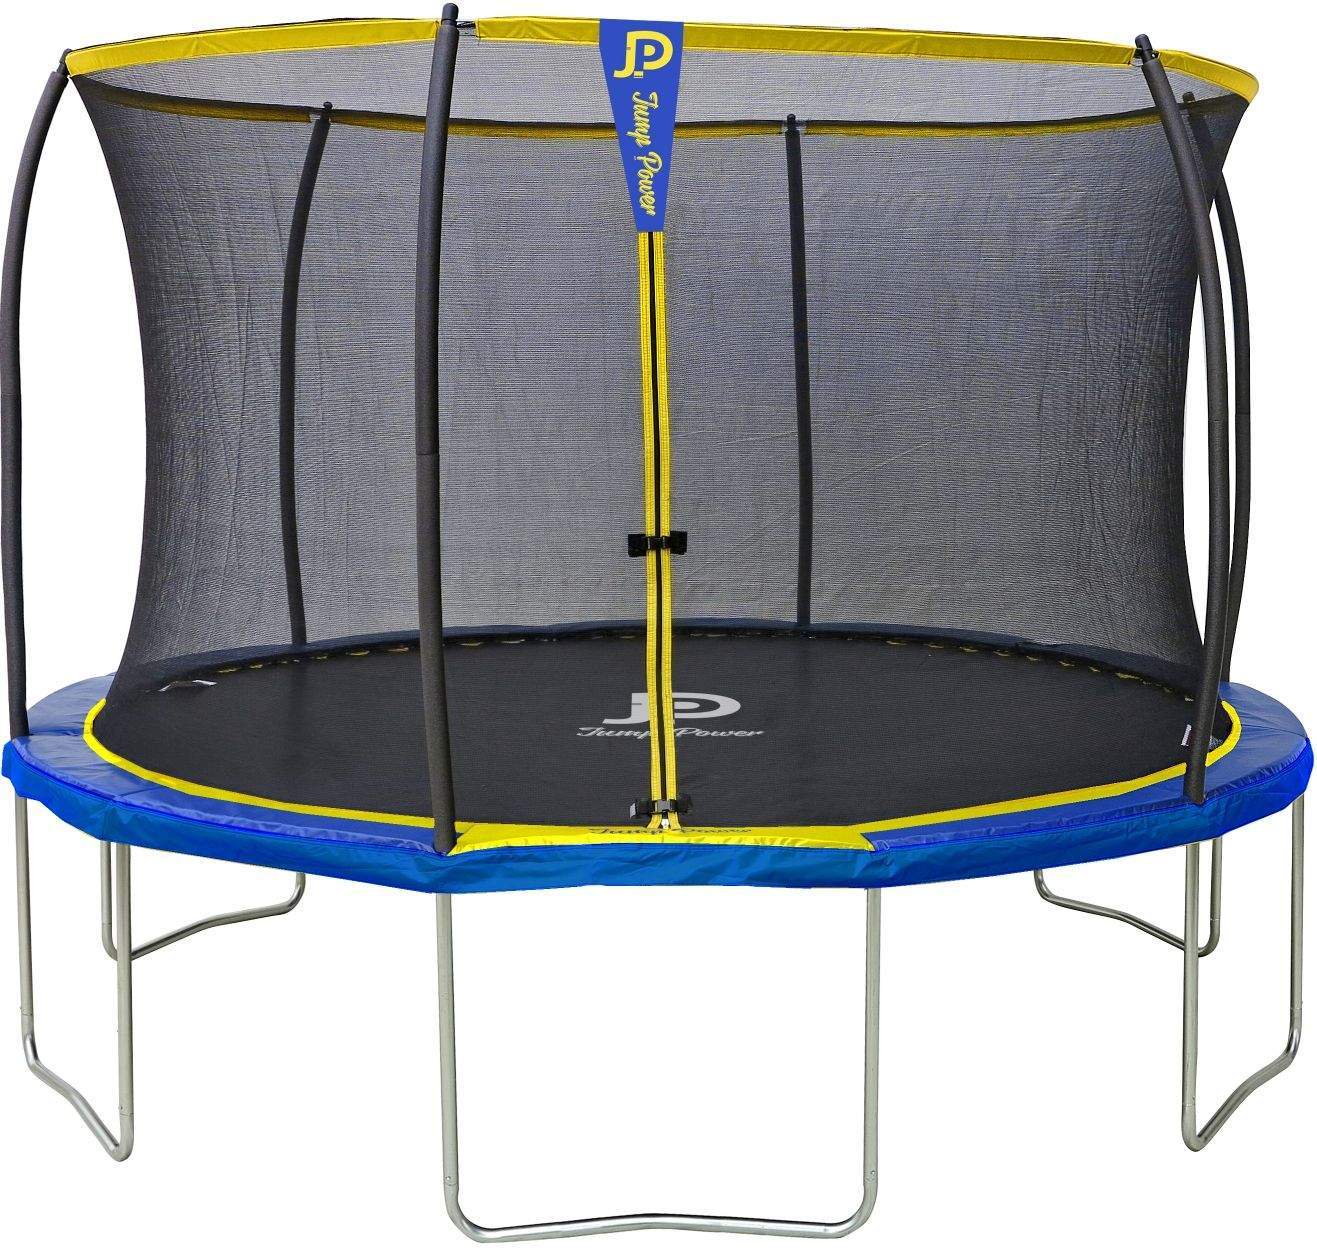 trampoline starflex MT8_6249 